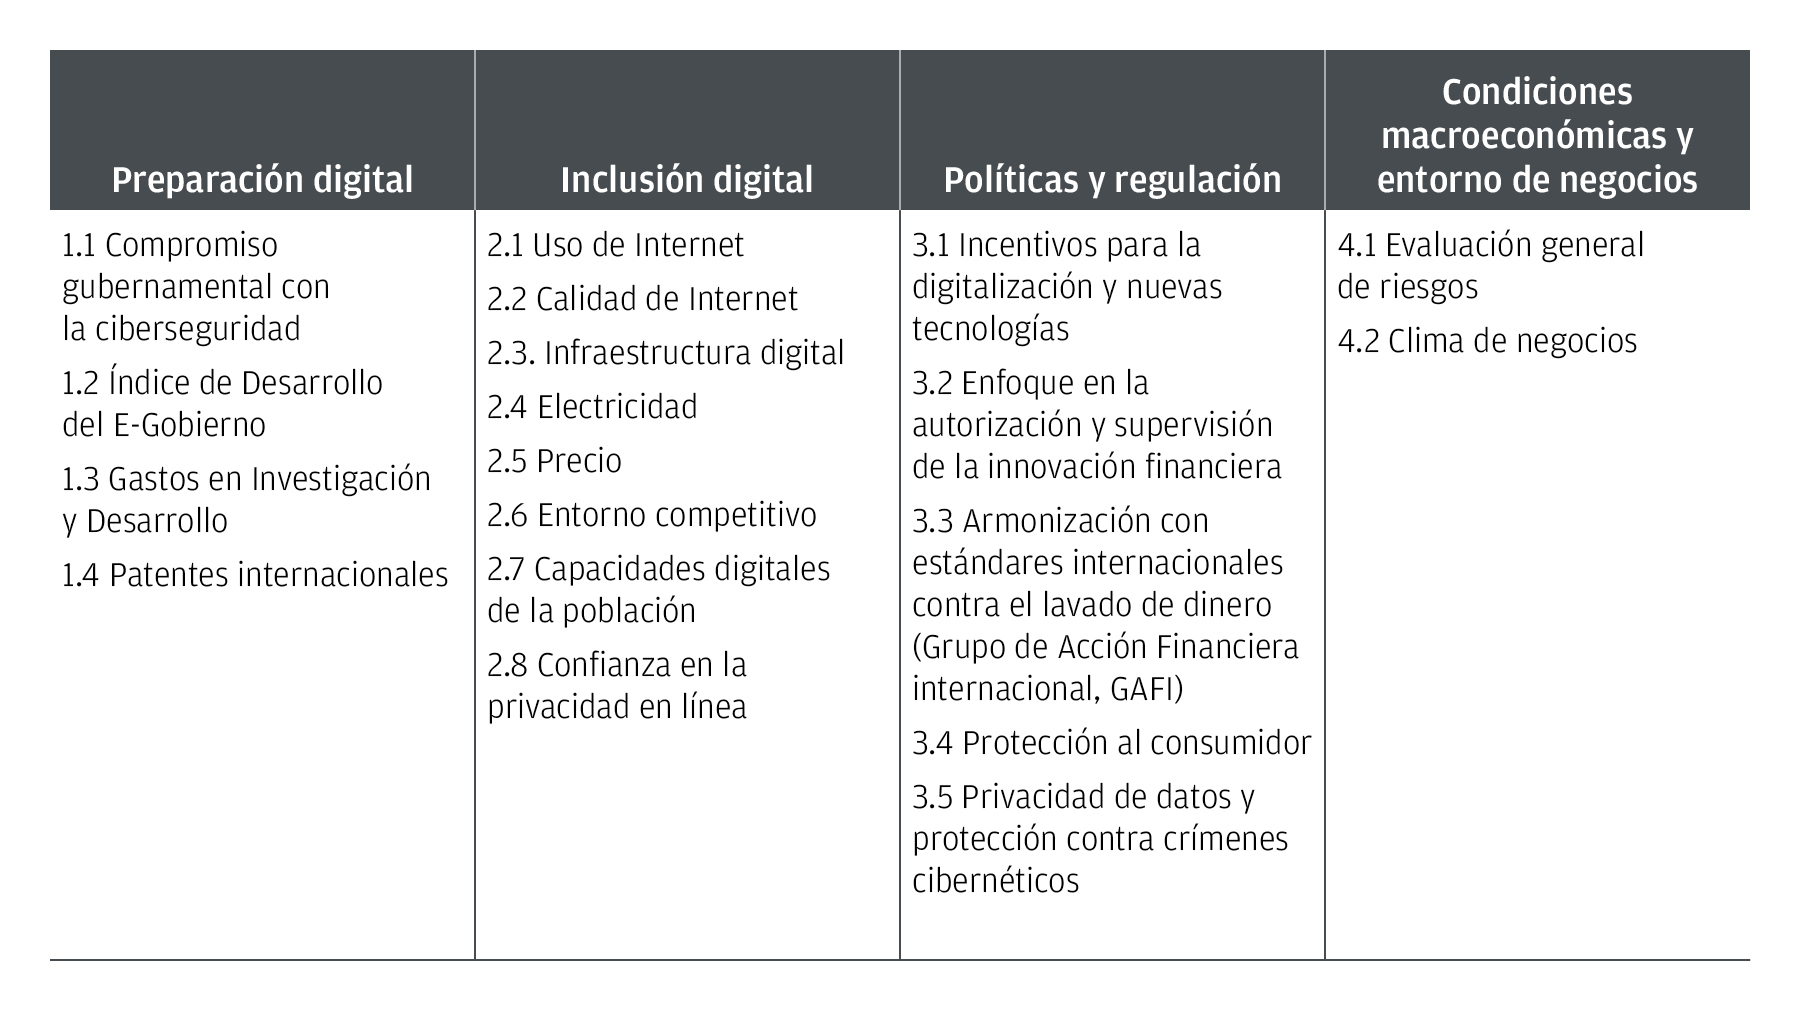 Este gráfico muestra los indicadores de un robusto ecosystema para start-ups: preparación digital, inclusión digital, políticas y regulación, y condiciones macroecnómicas y entorno de negocios.